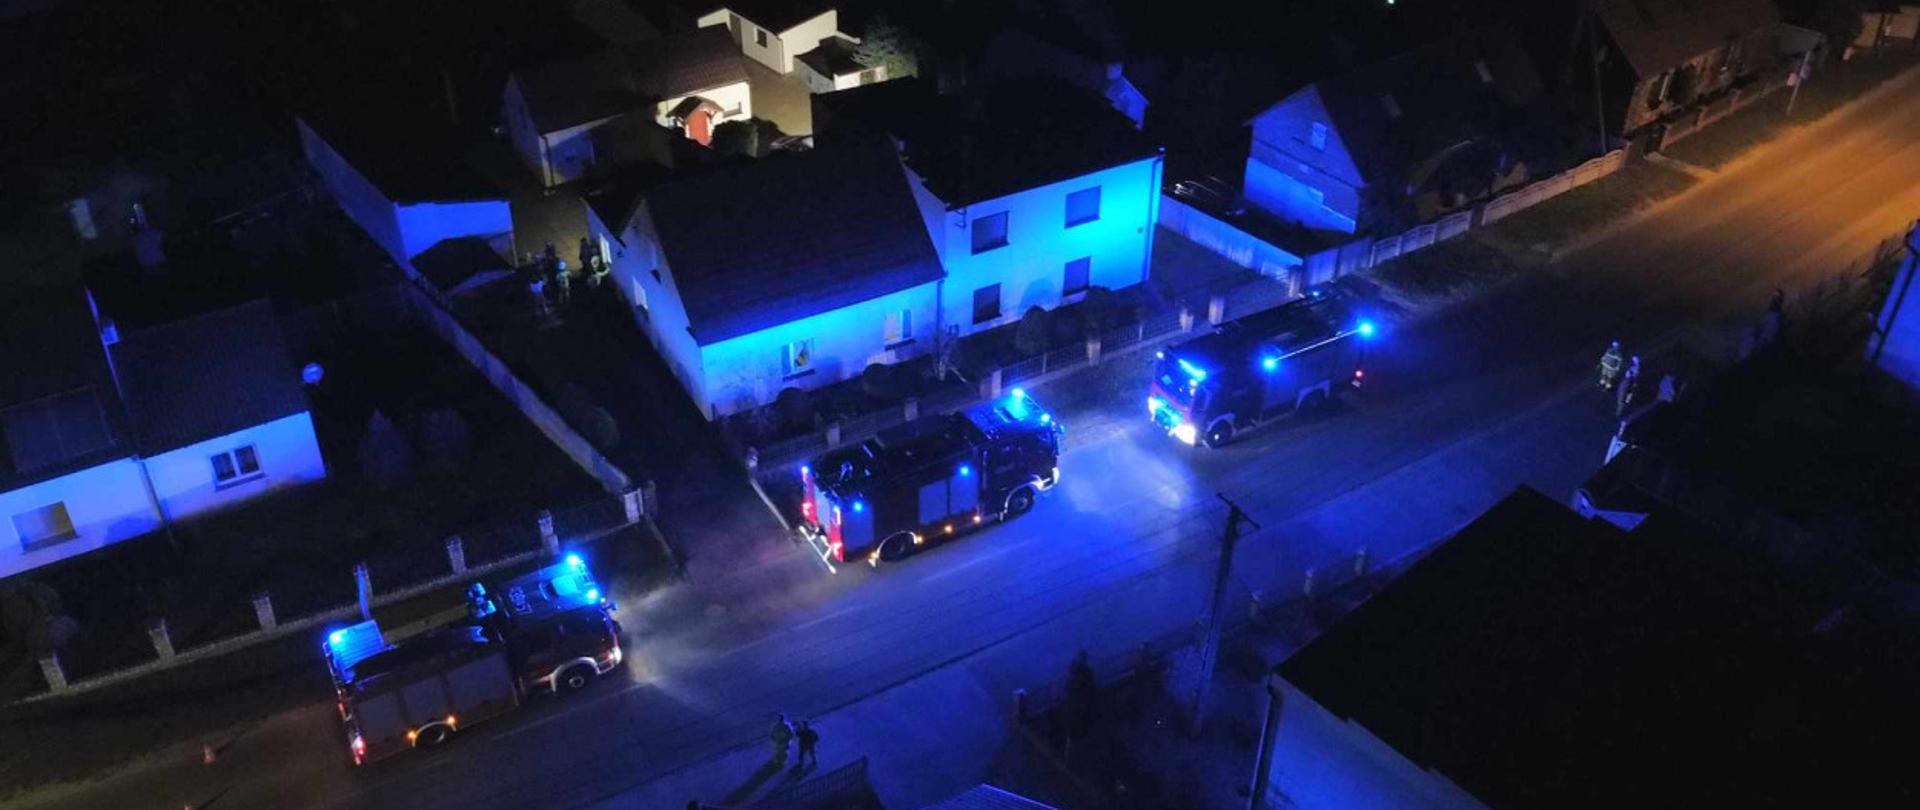 Trzy wozy strażackie z włączonymi światłami błyskowymi. Stoją one na drodze przy budynku.